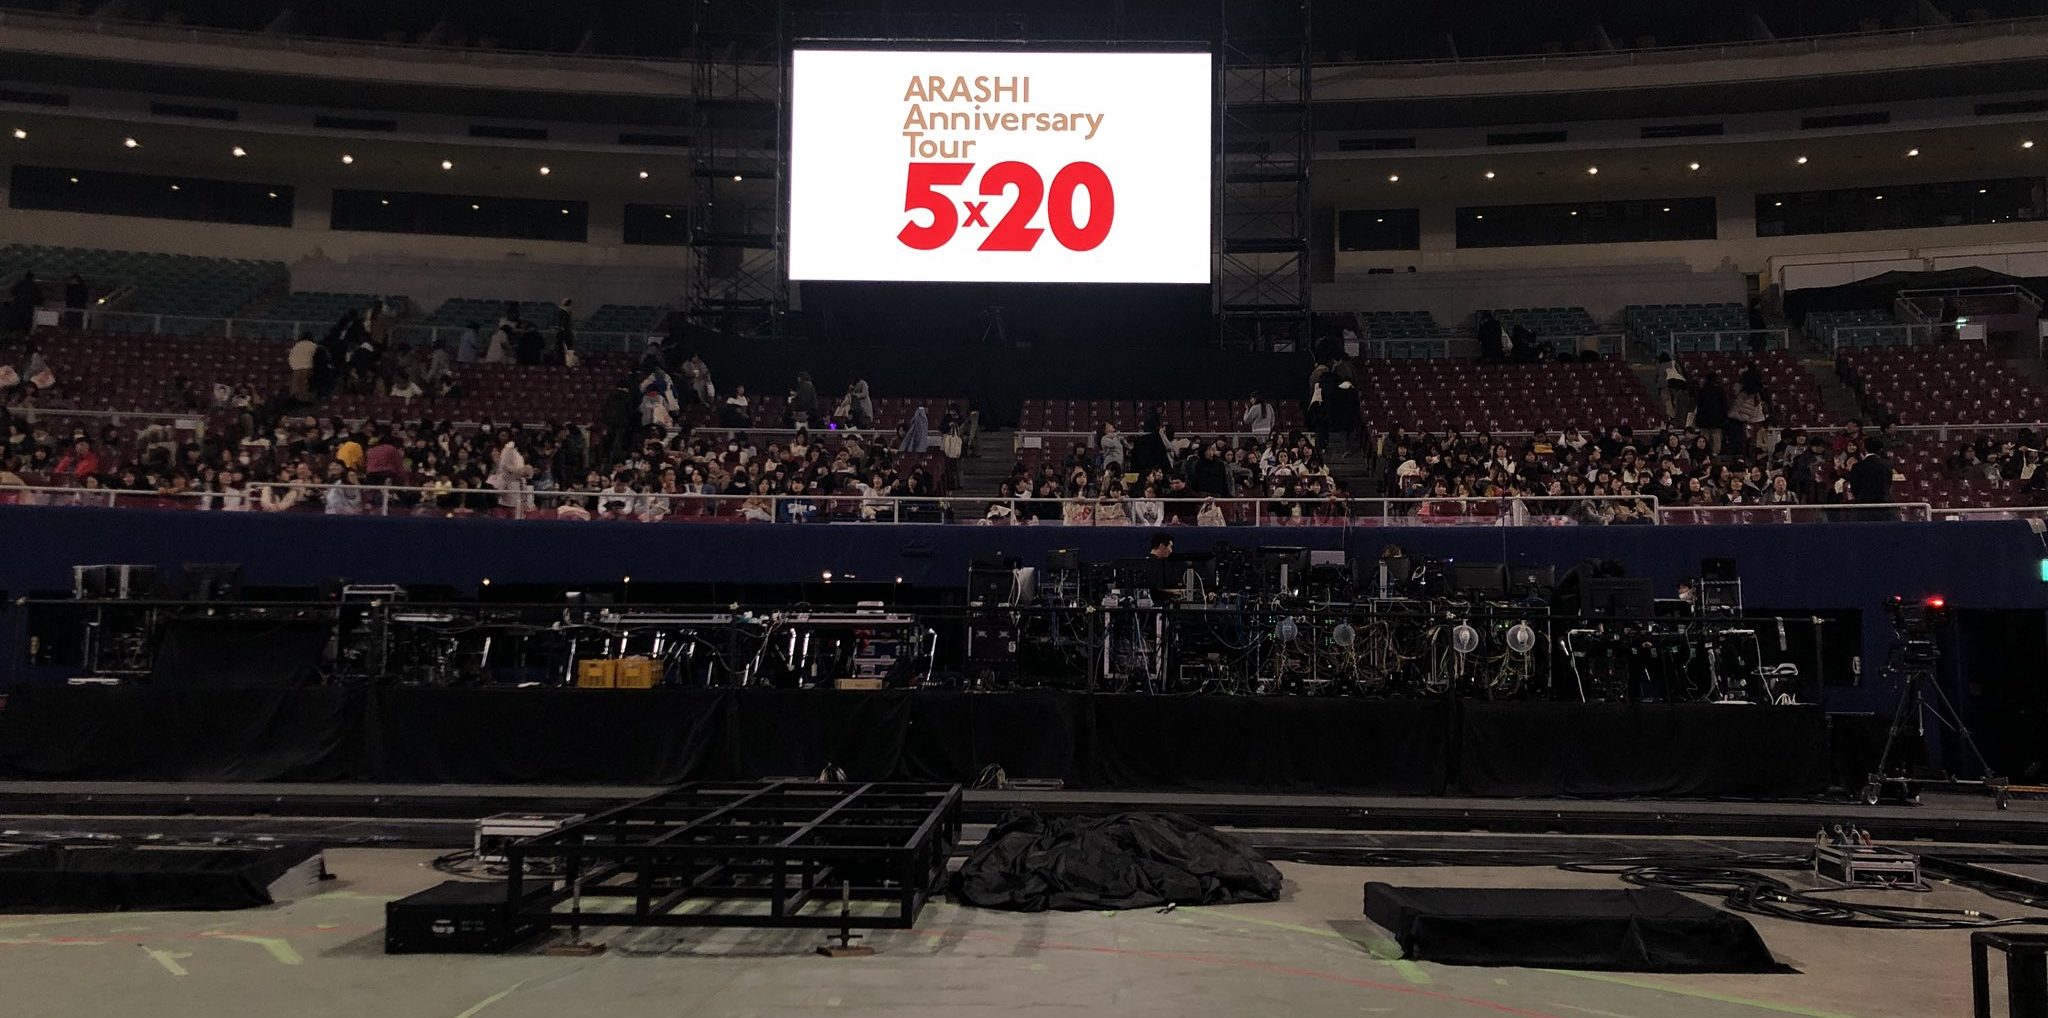 嵐 コンサート 名古屋 Arashi Anniversary Tour 5 ナゴヤドーム 座席 デジチケ Qr ゲート 18 19 ライブ ネタバレ レポ Tlクリップ